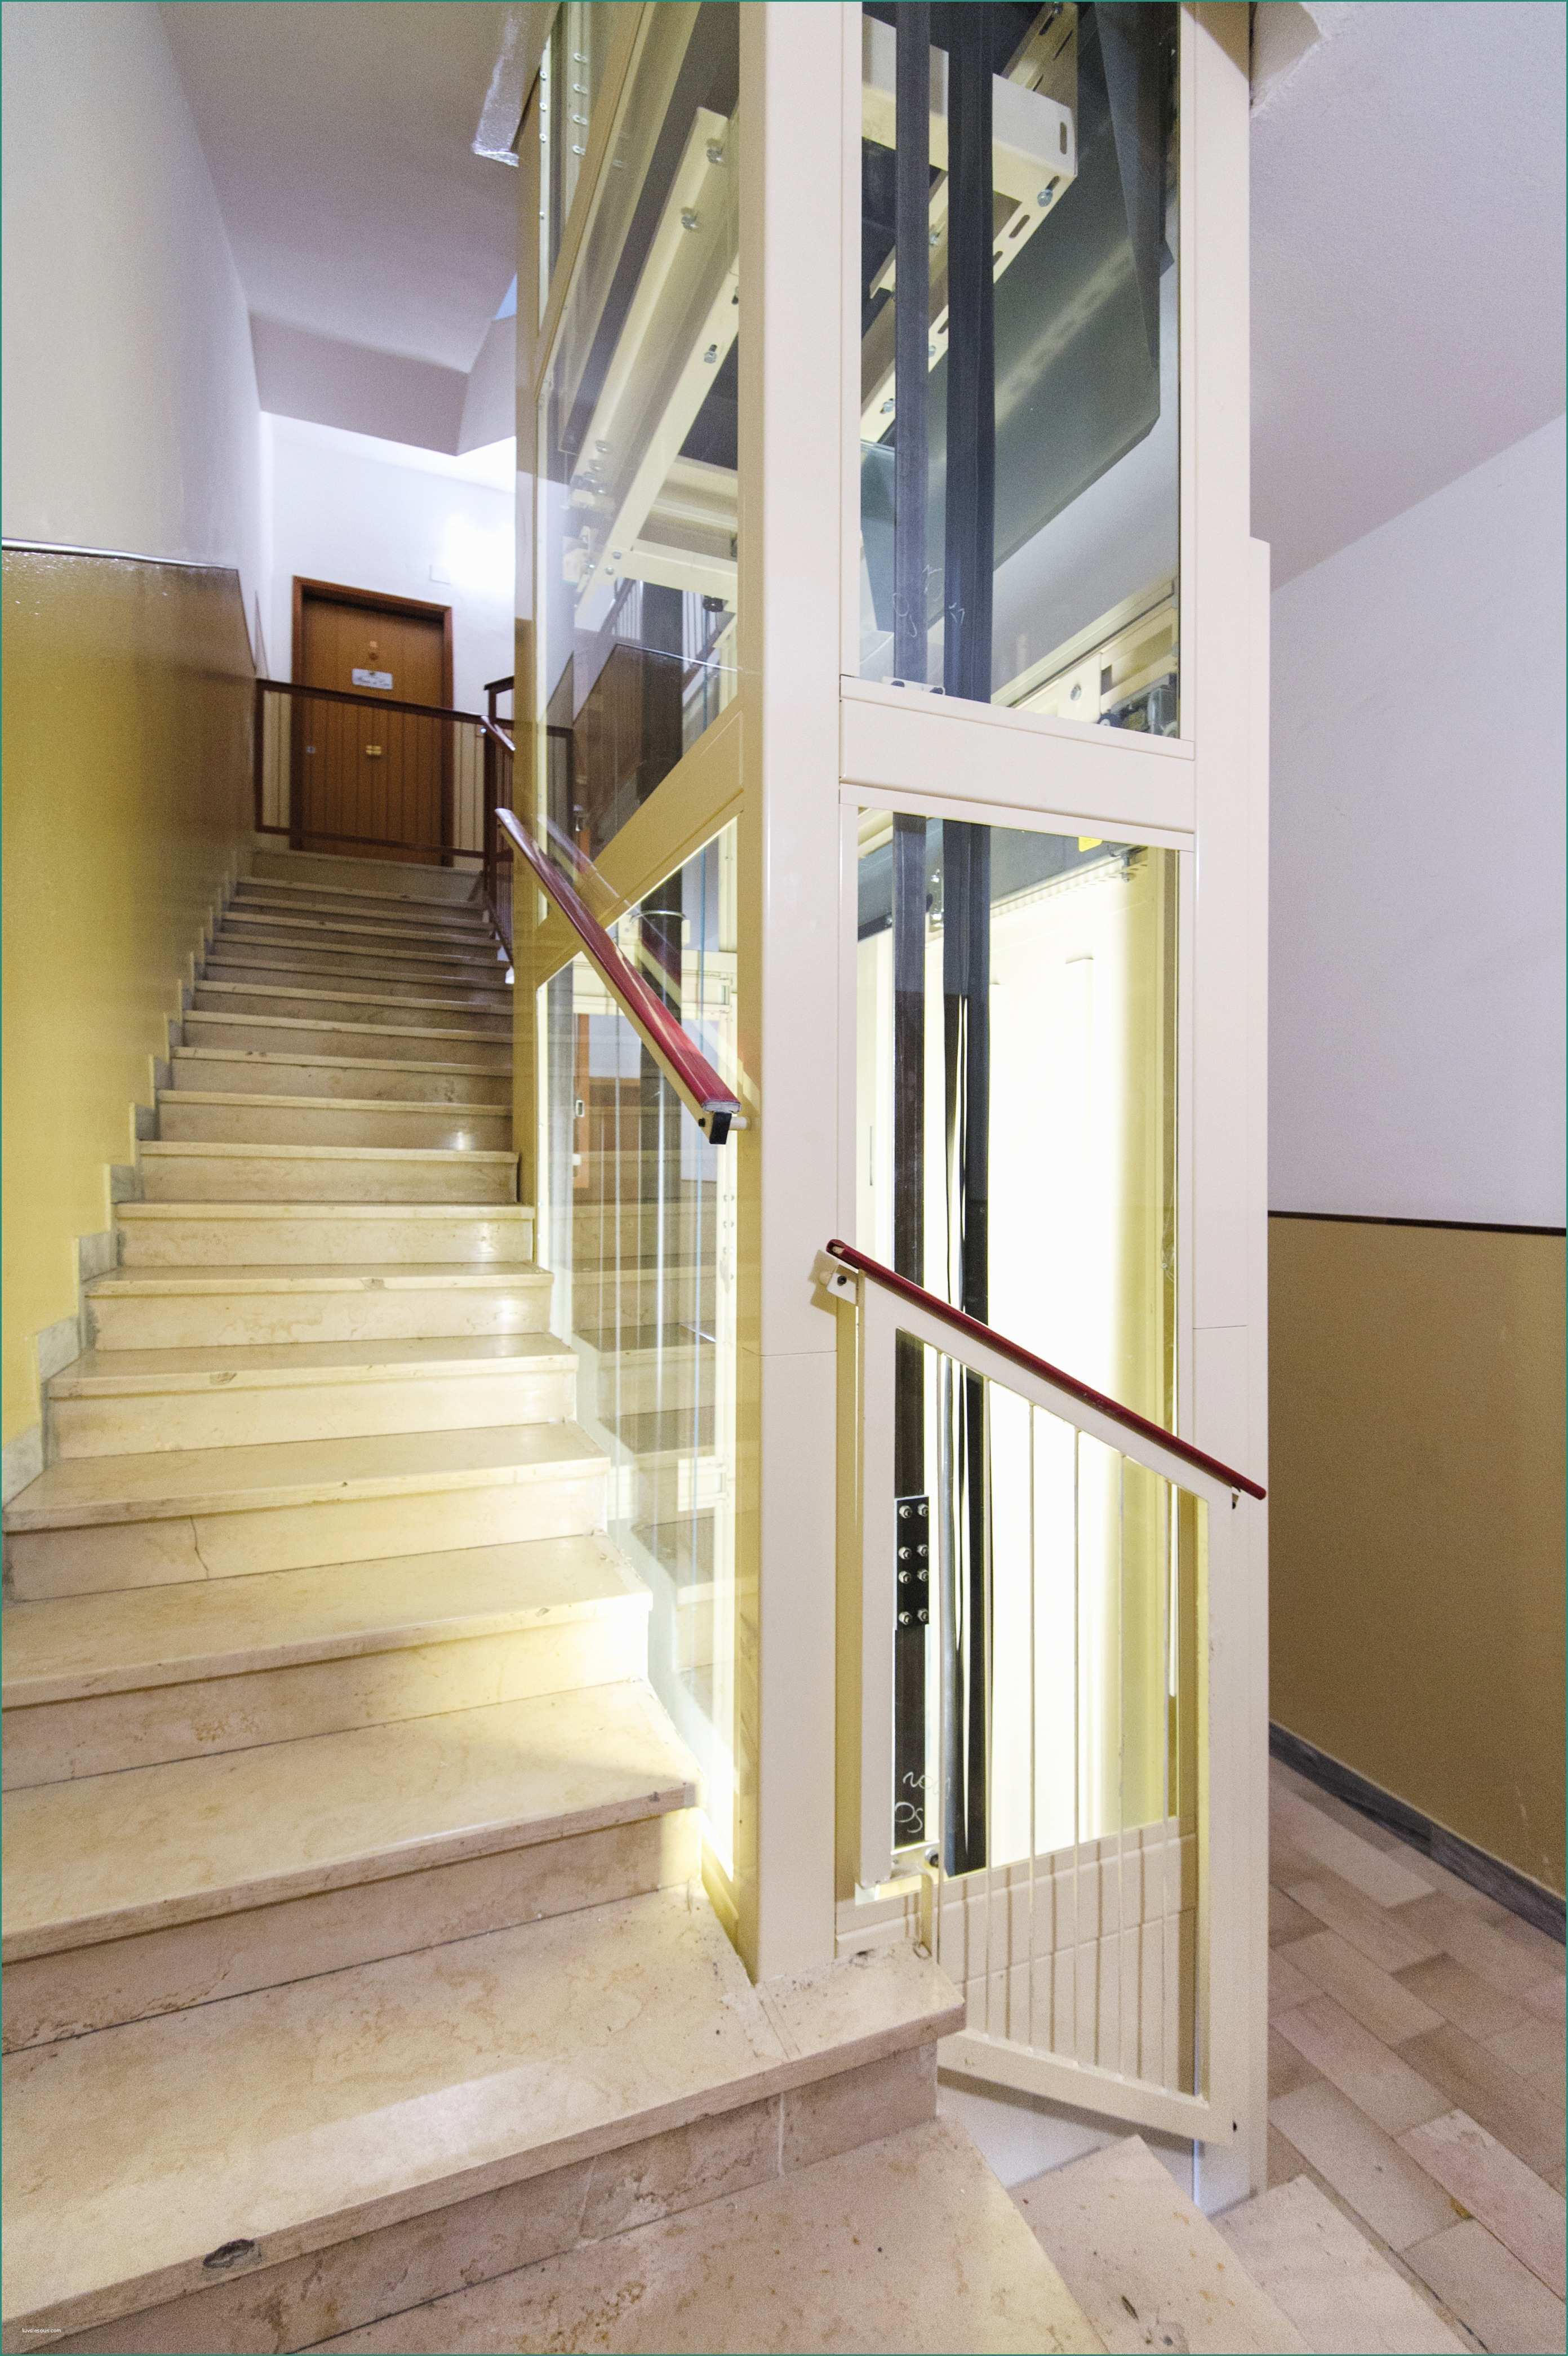 Dimensioni Minime ascensore Disabili E ascensori Per Disabili Le Dimensioni Adeguate